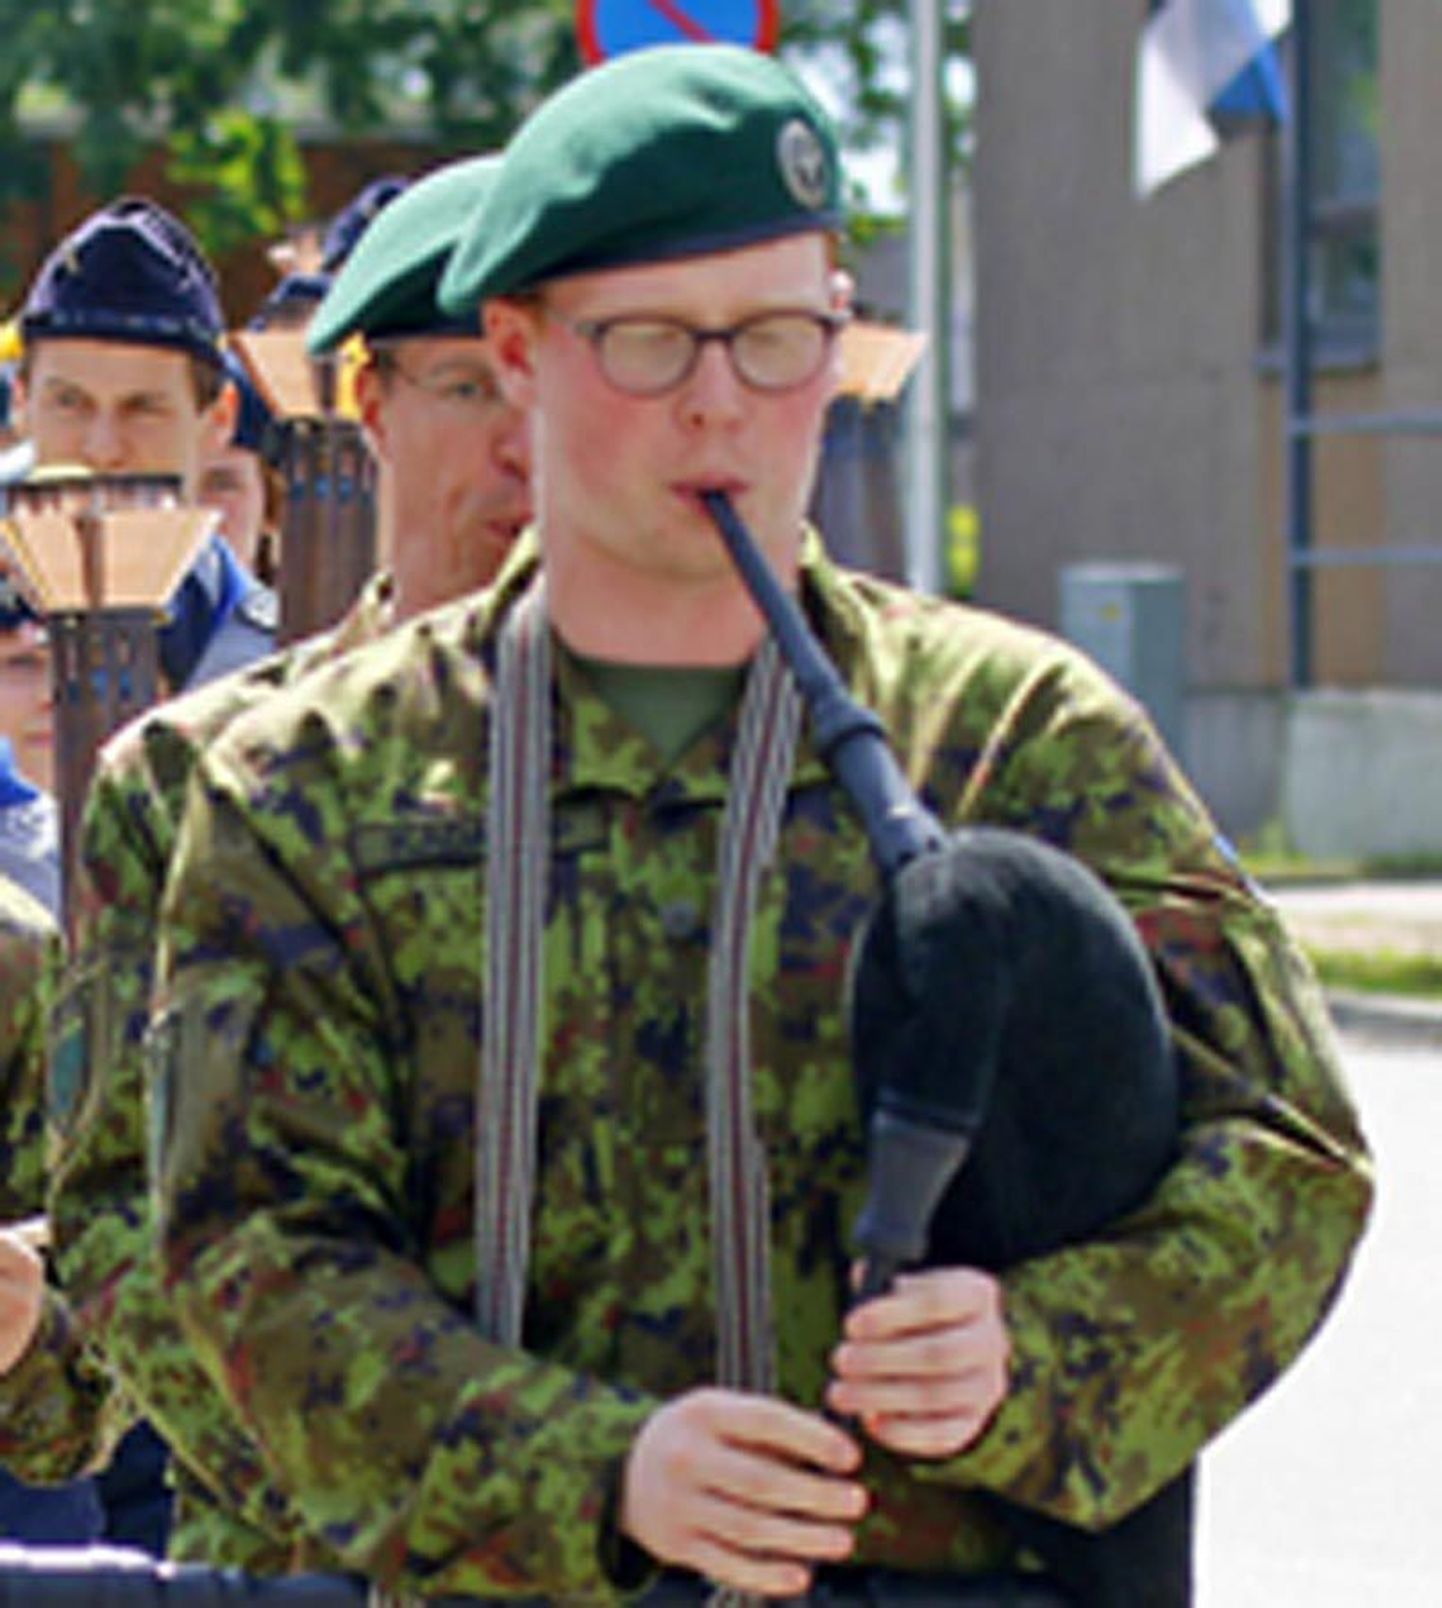 Neli Viljandi torupillimängijat marssisid võidupüha paraadil tuletoojate rivi ees.